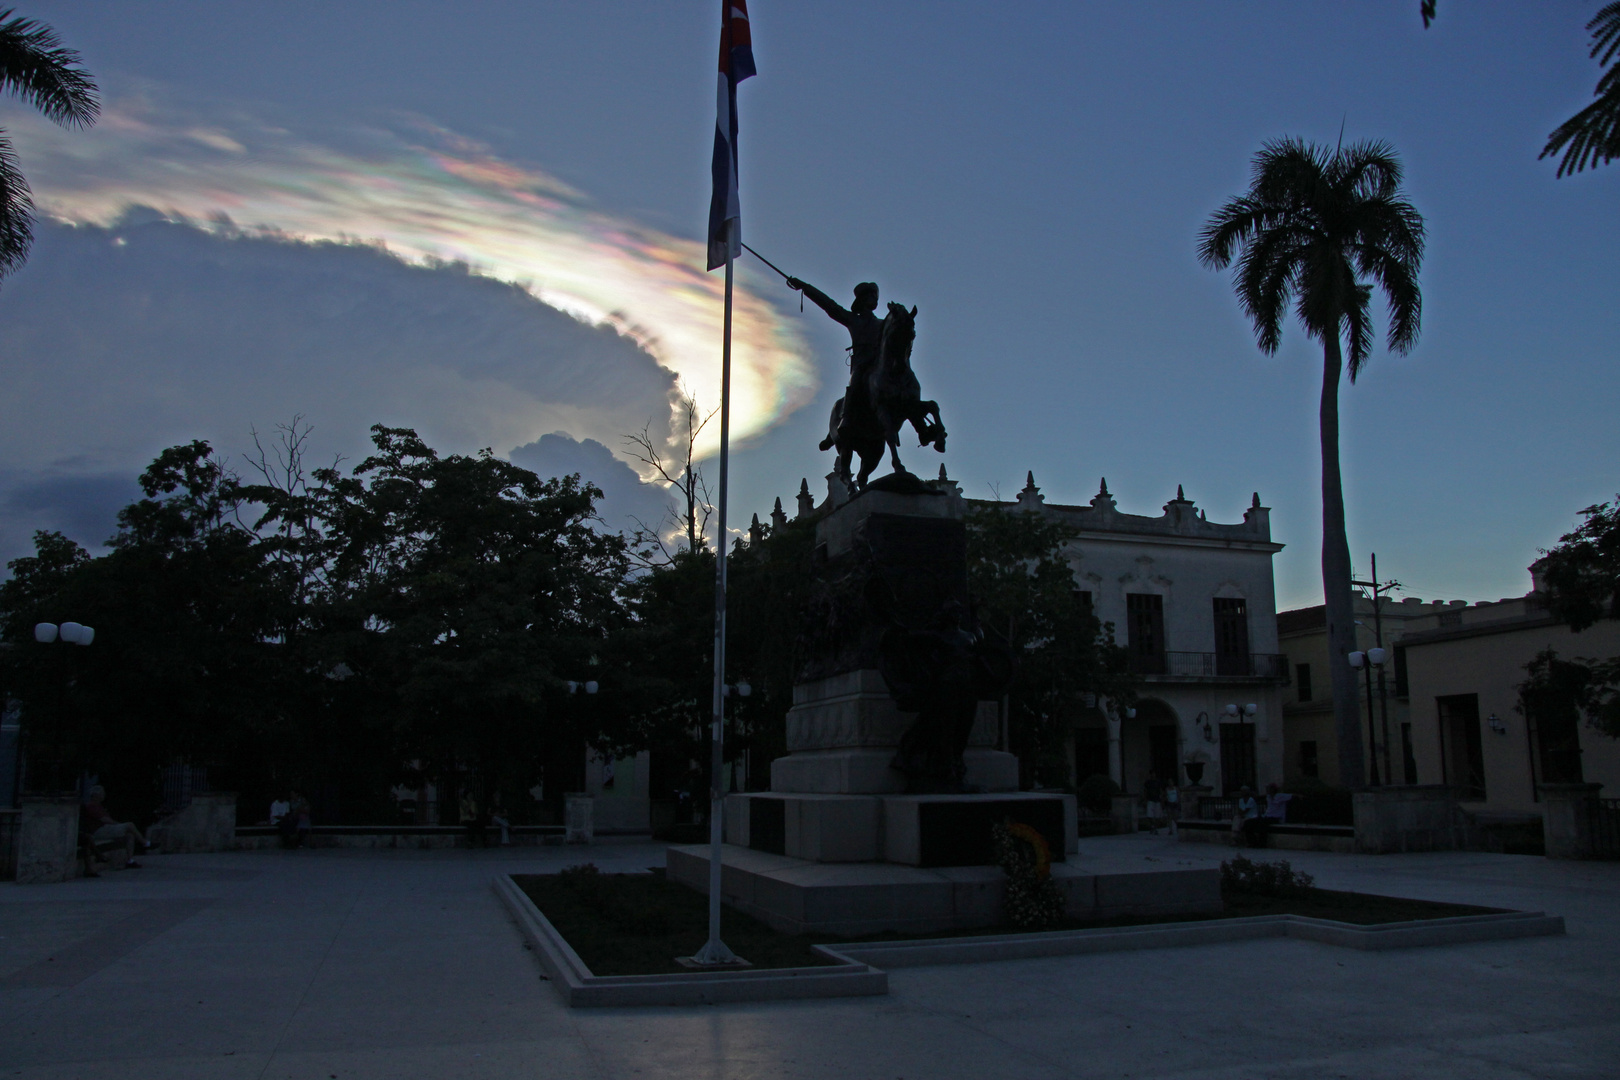 Kuba 2009